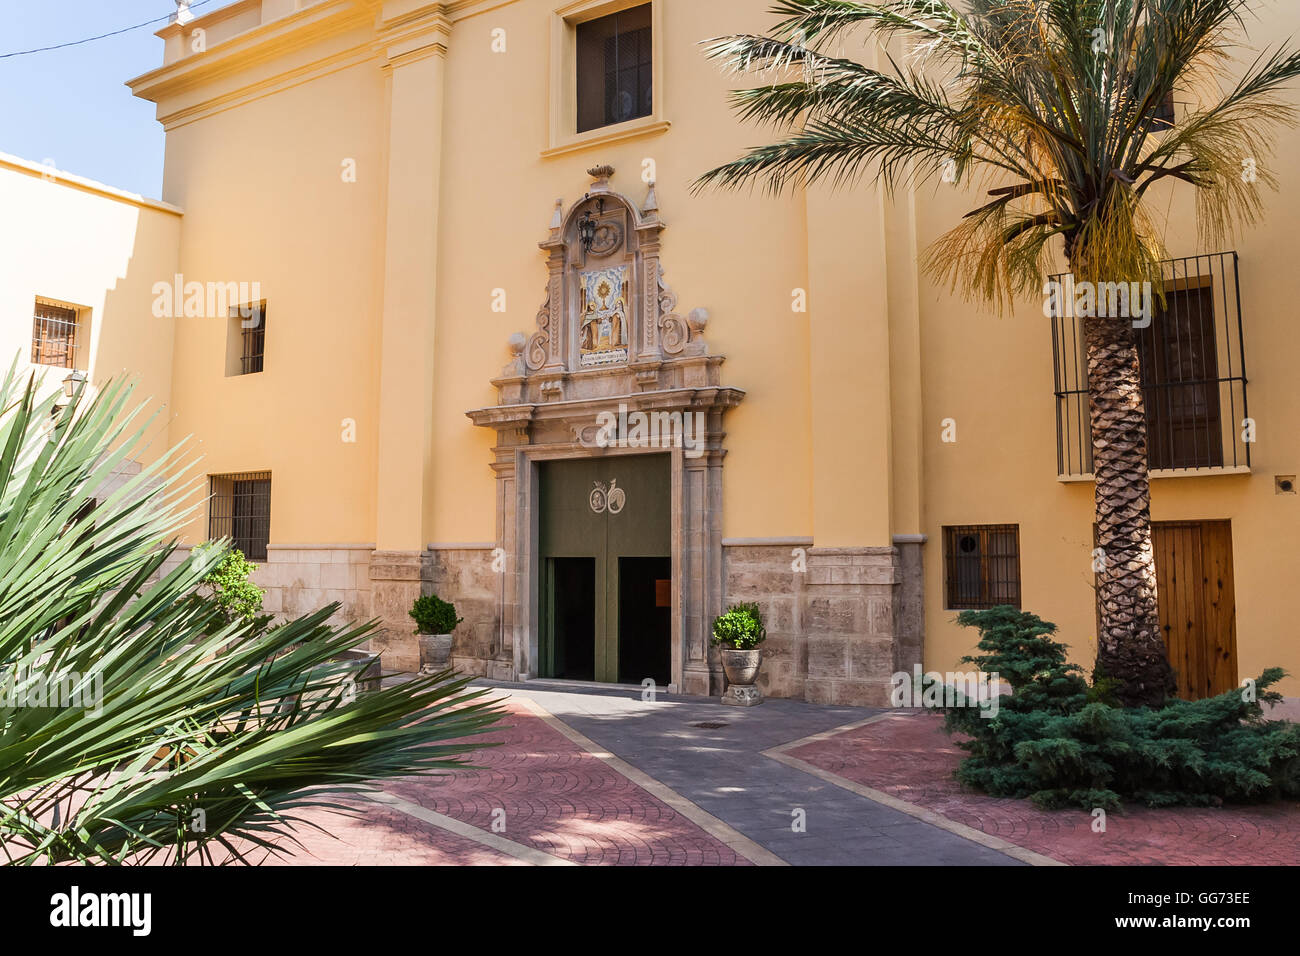 Cour intérieure avec des portes décorées à Valence, Espagne Banque D'Images